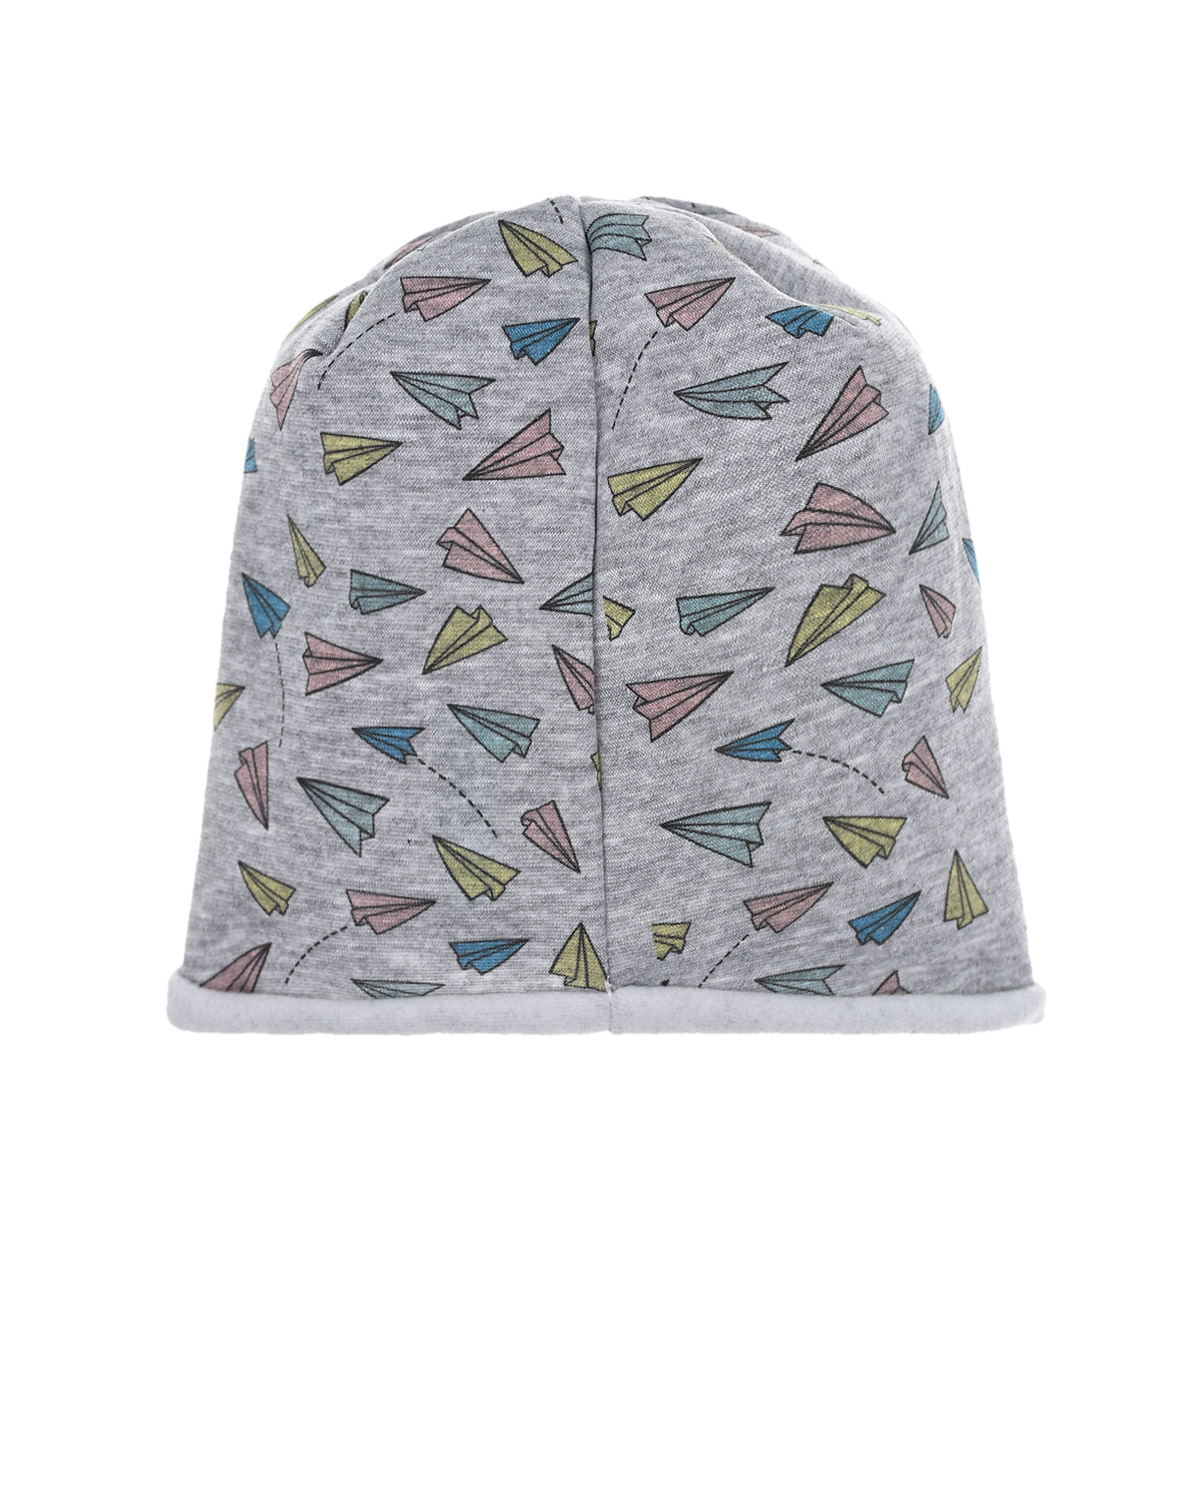 Трикотажная шапка с принтом "Бумажные самолетики" Catya детская, размер 49, цвет серый - фото 2